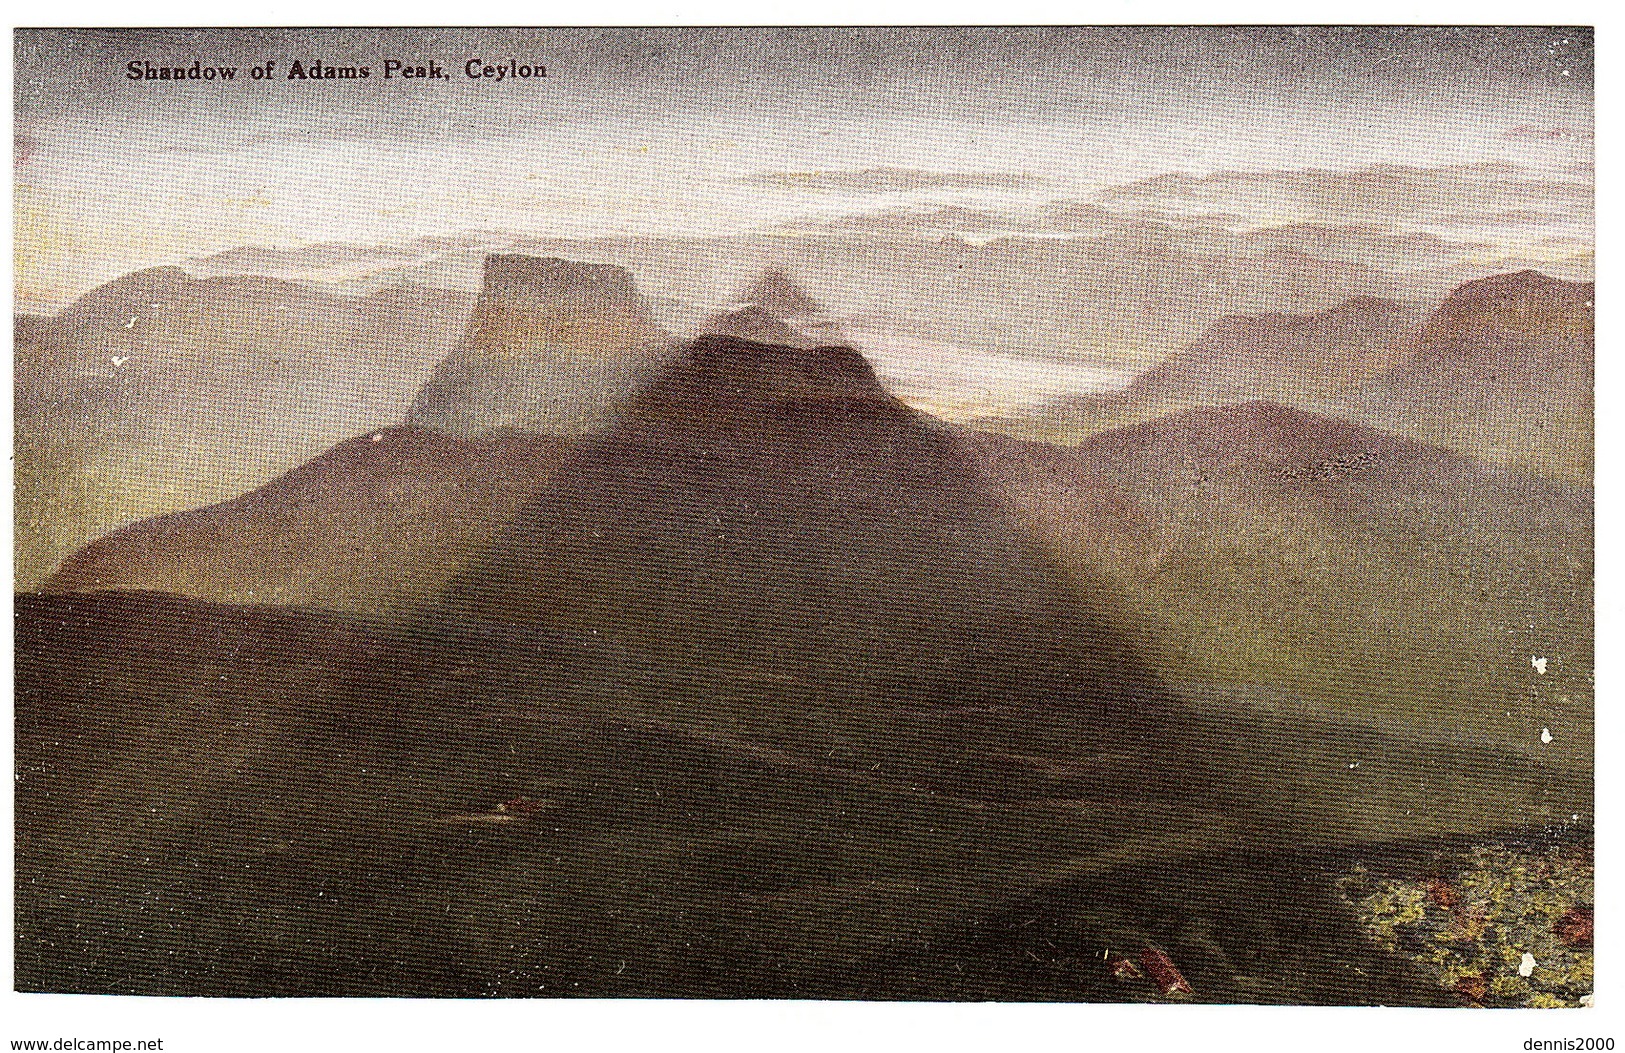 CEYLON - SRI LANKA -  Shadow Of Adams Peak, Ceylon - Sri Lanka (Ceylon)